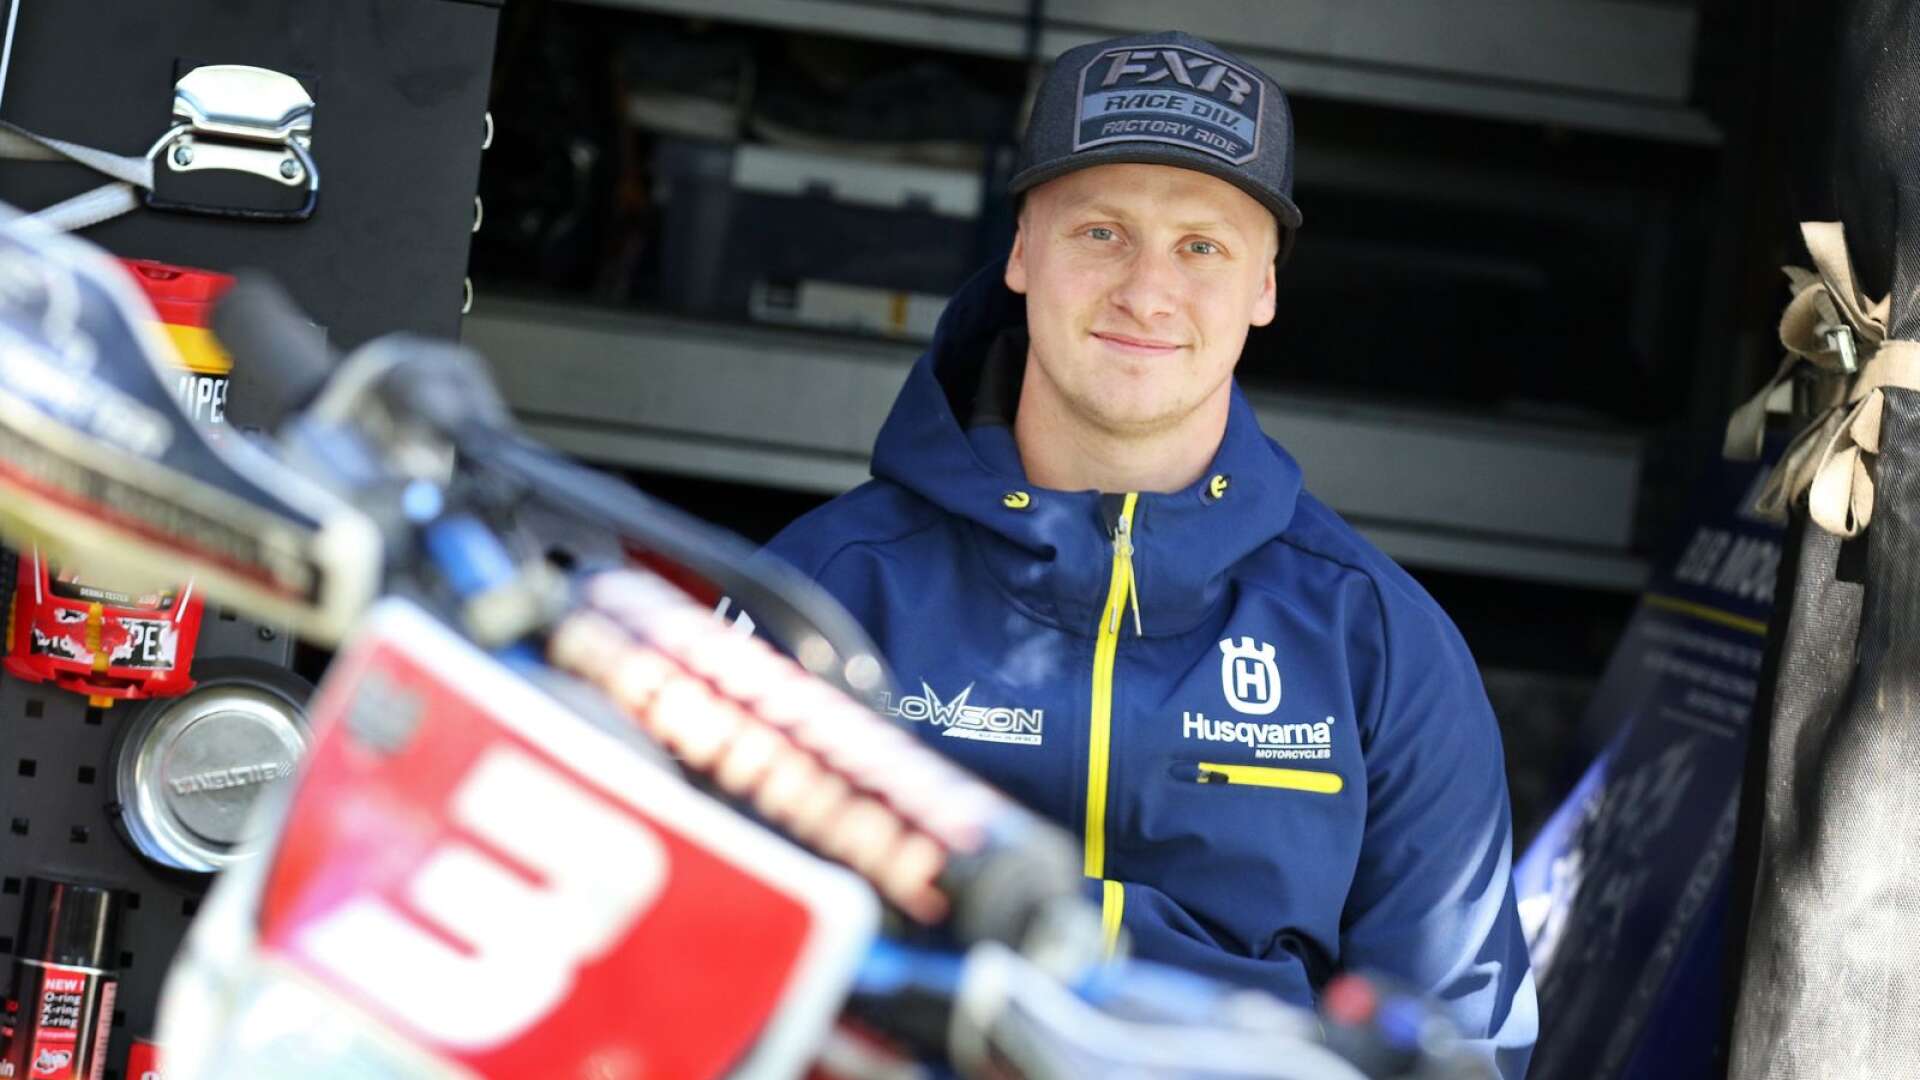 Det är en annorlunda säsong för Sveriges enduroförare. FMCK Skövdes Albin Elowson är dock positiv då den försenade säsongsstarten gav honom tid att rehabilitera sig från fjolårets skada.